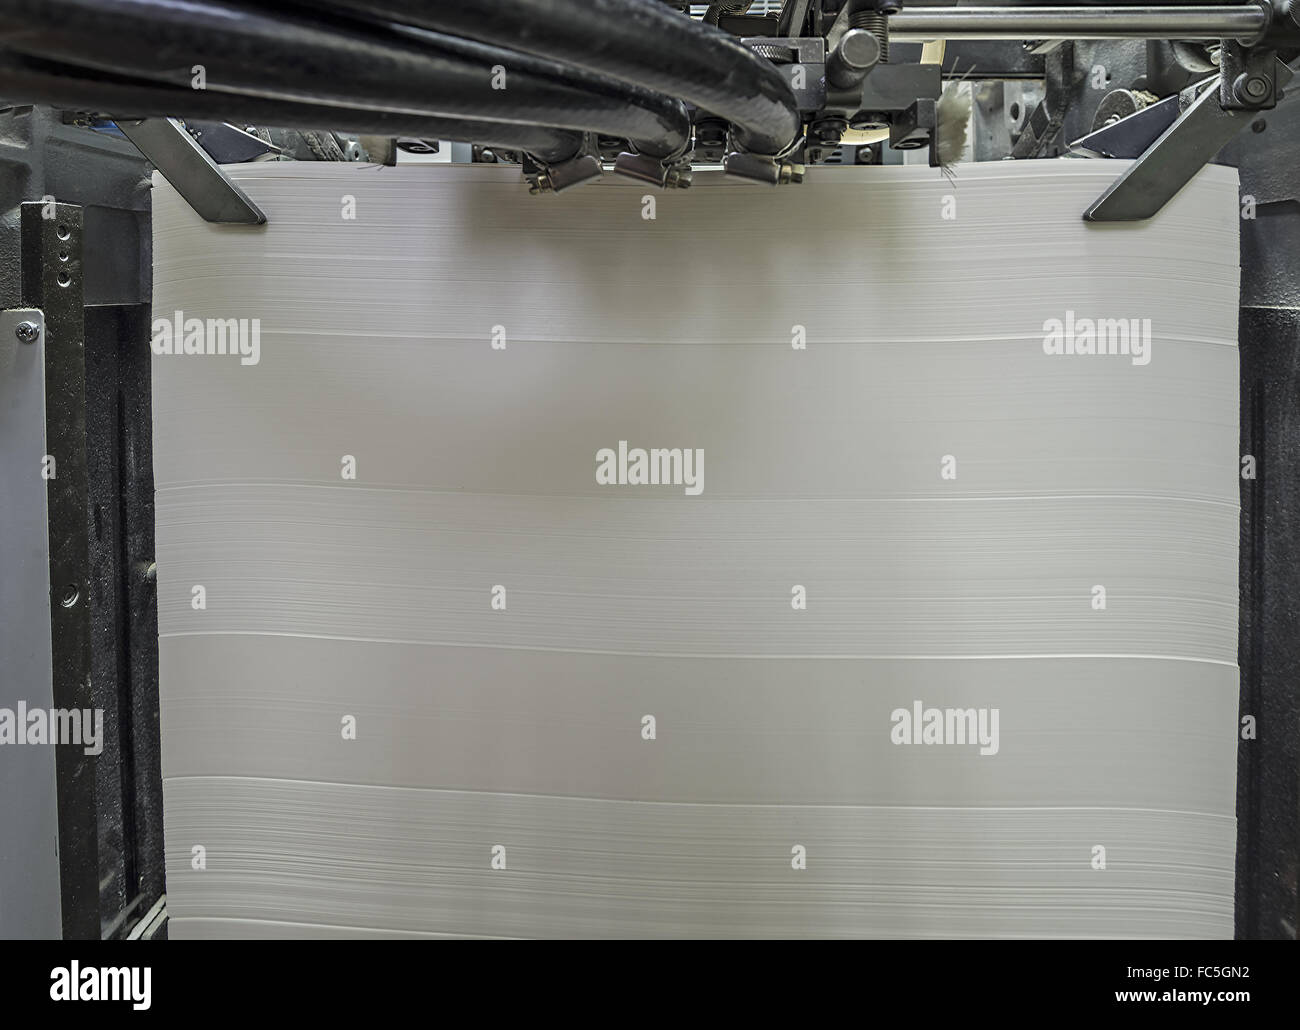 Papier in Offset-Druckmaschine Stockfoto